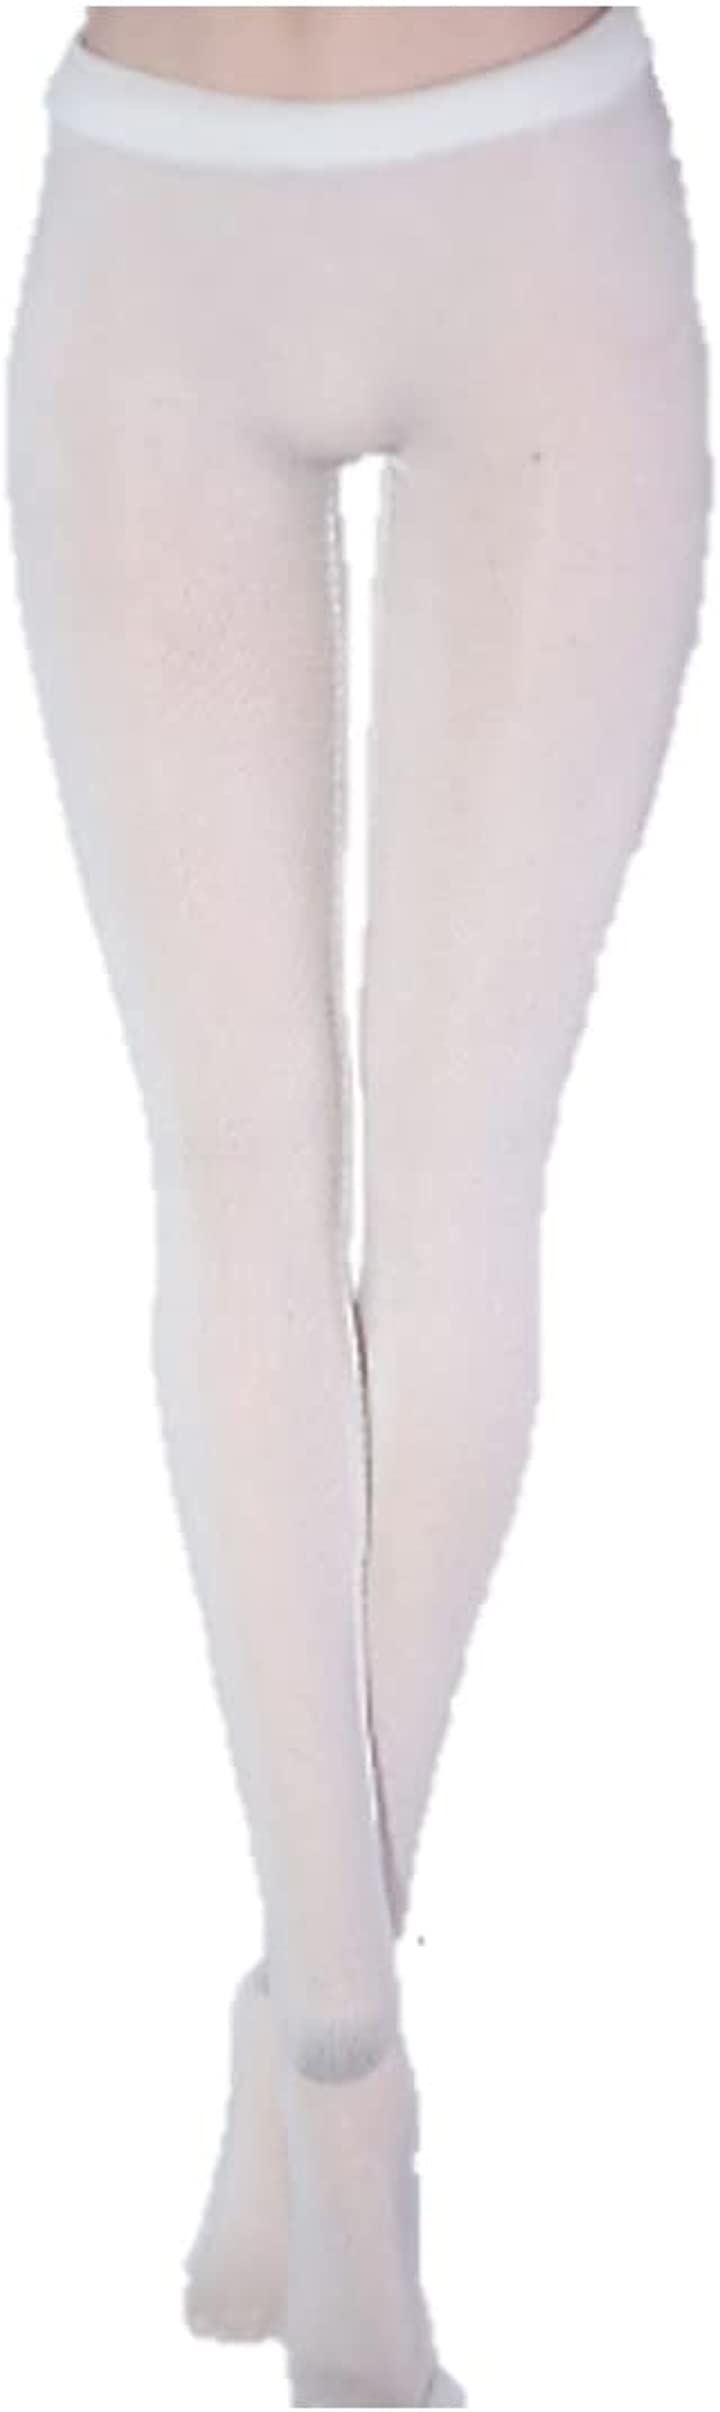 フィギュア ストッキング タイツ 1/6 スケール 人形 ドール 衣装 パンツ 素体 レディ 女性 02 ホワイト 着せ替え おもちゃ おもちゃ・玩具・ホビー(02　ホワイト)